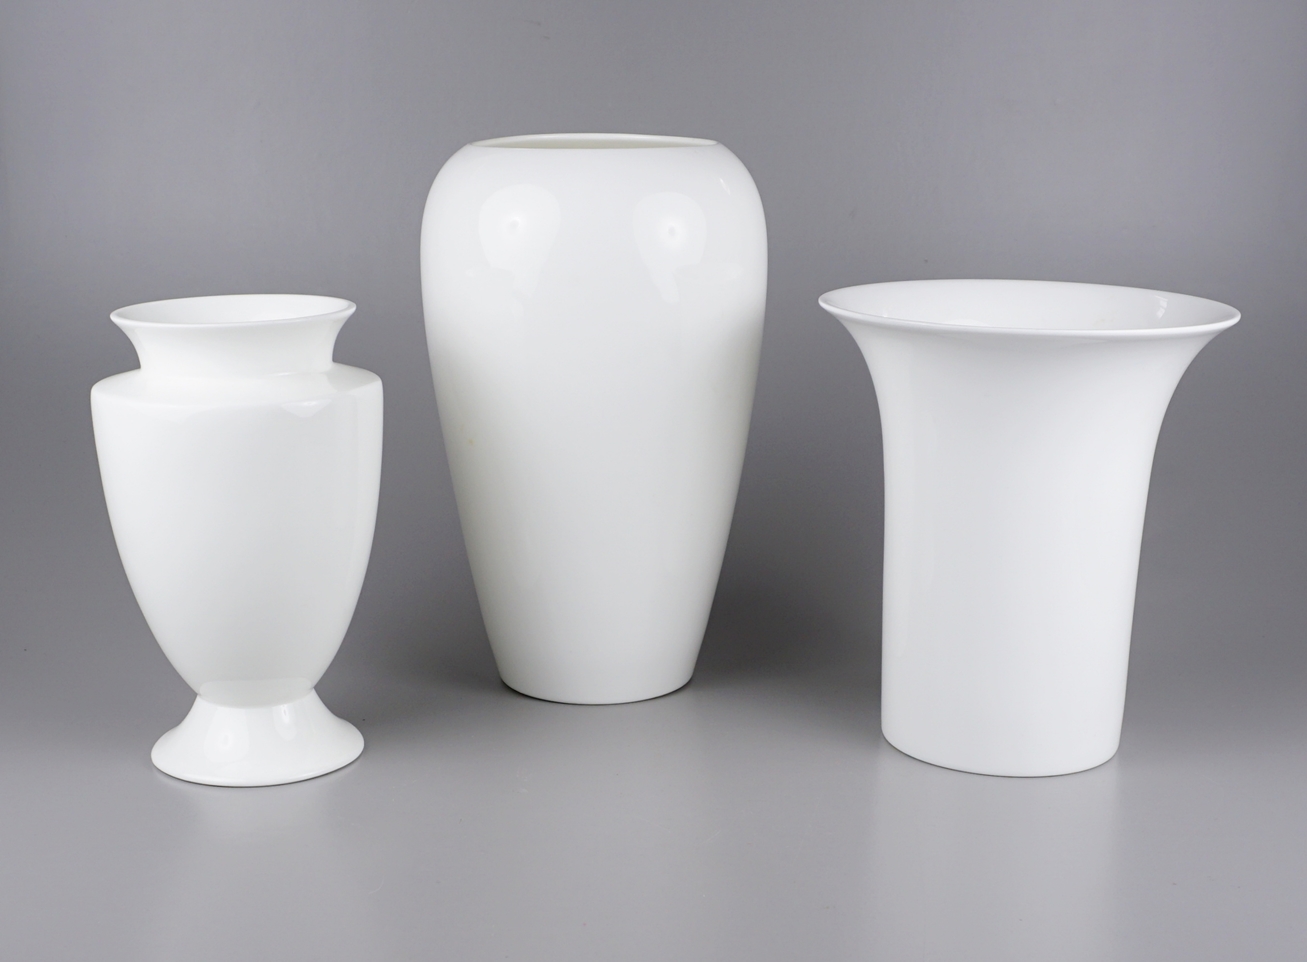 4 weiße Porzellanvasen, unterschiedliche Formen und Höhen, überwiegend ohne Hersteller - Bild 3 aus 3